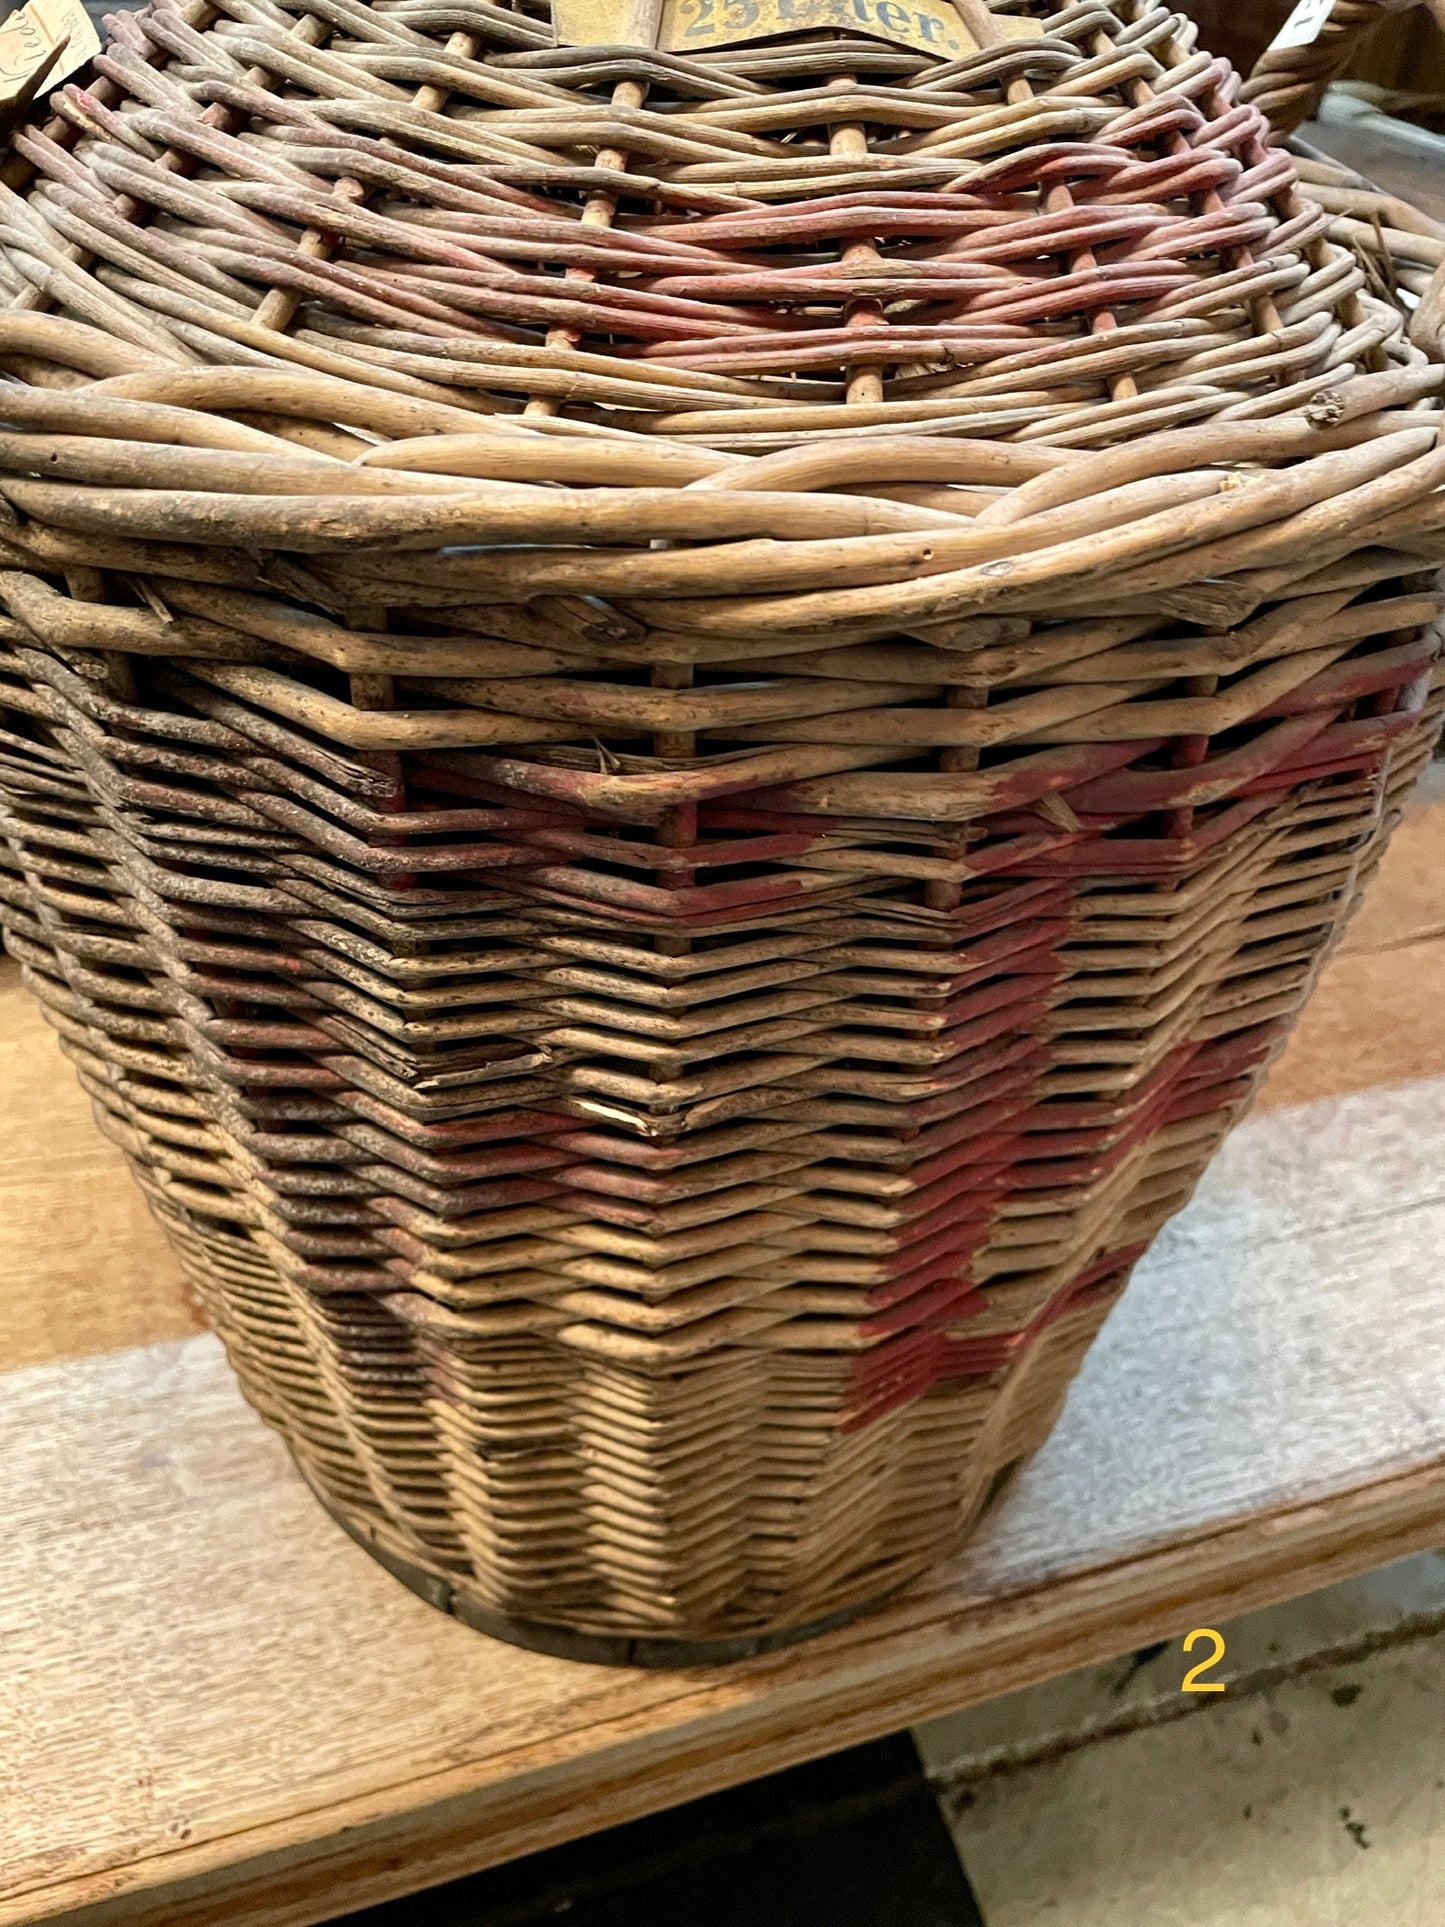 Antique Glass Demijohn Wine Bottle in Wicker Basket